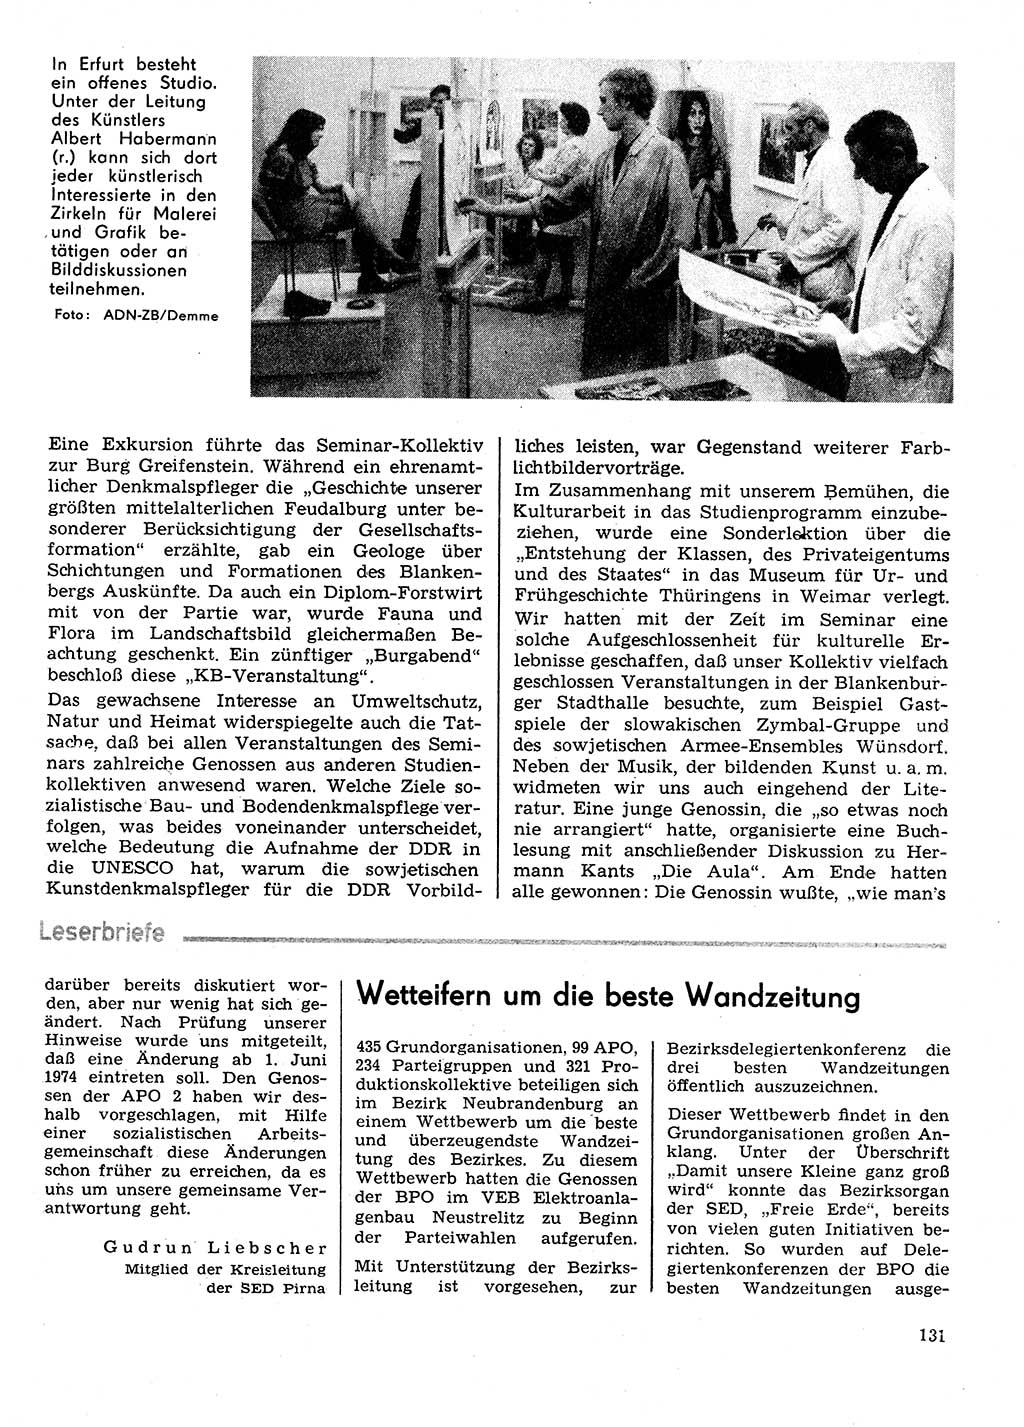 Neuer Weg (NW), Organ des Zentralkomitees (ZK) der SED (Sozialistische Einheitspartei Deutschlands) für Fragen des Parteilebens, 29. Jahrgang [Deutsche Demokratische Republik (DDR)] 1974, Seite 131 (NW ZK SED DDR 1974, S. 131)